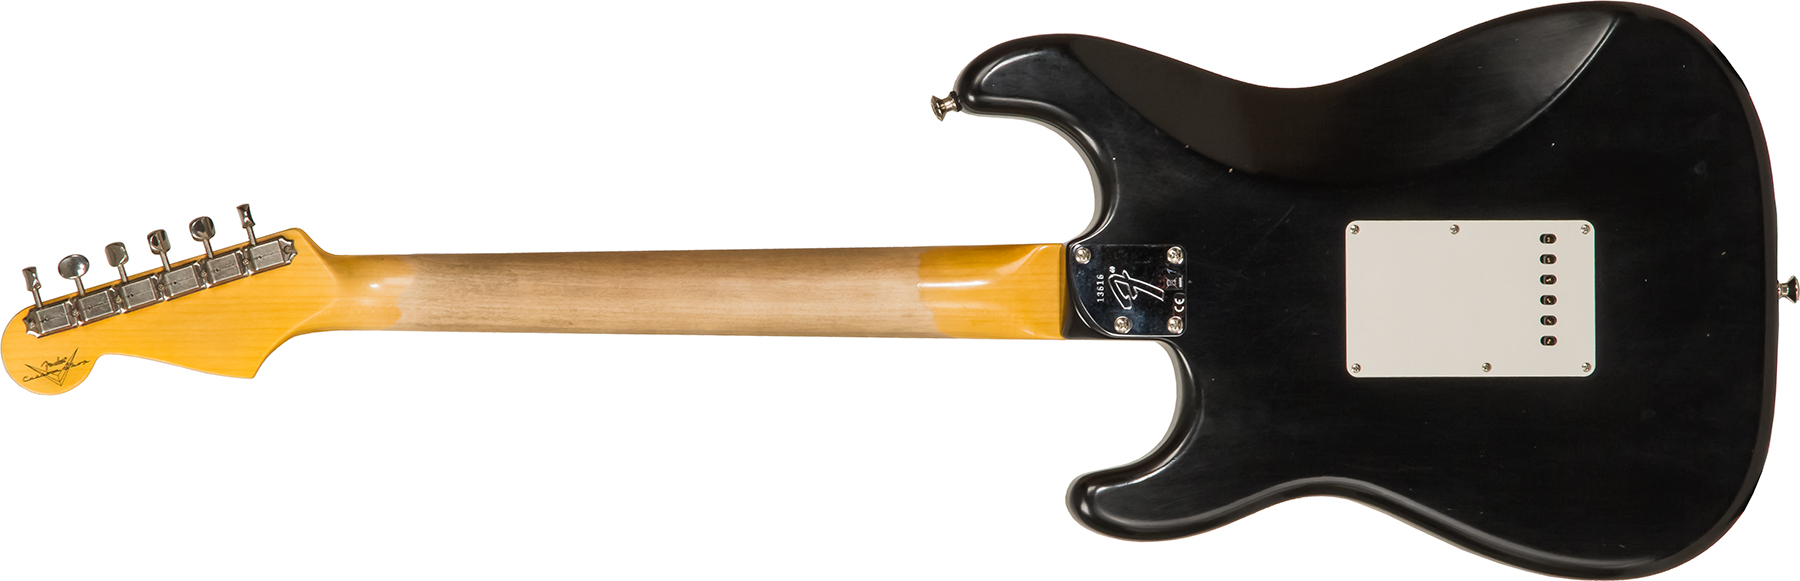 Fender Custom Shop Strat Postmodern 3s Trem Rw #xn13616 - Journeyman Relic Aged Black - Elektrische gitaar in Str-vorm - Variation 1